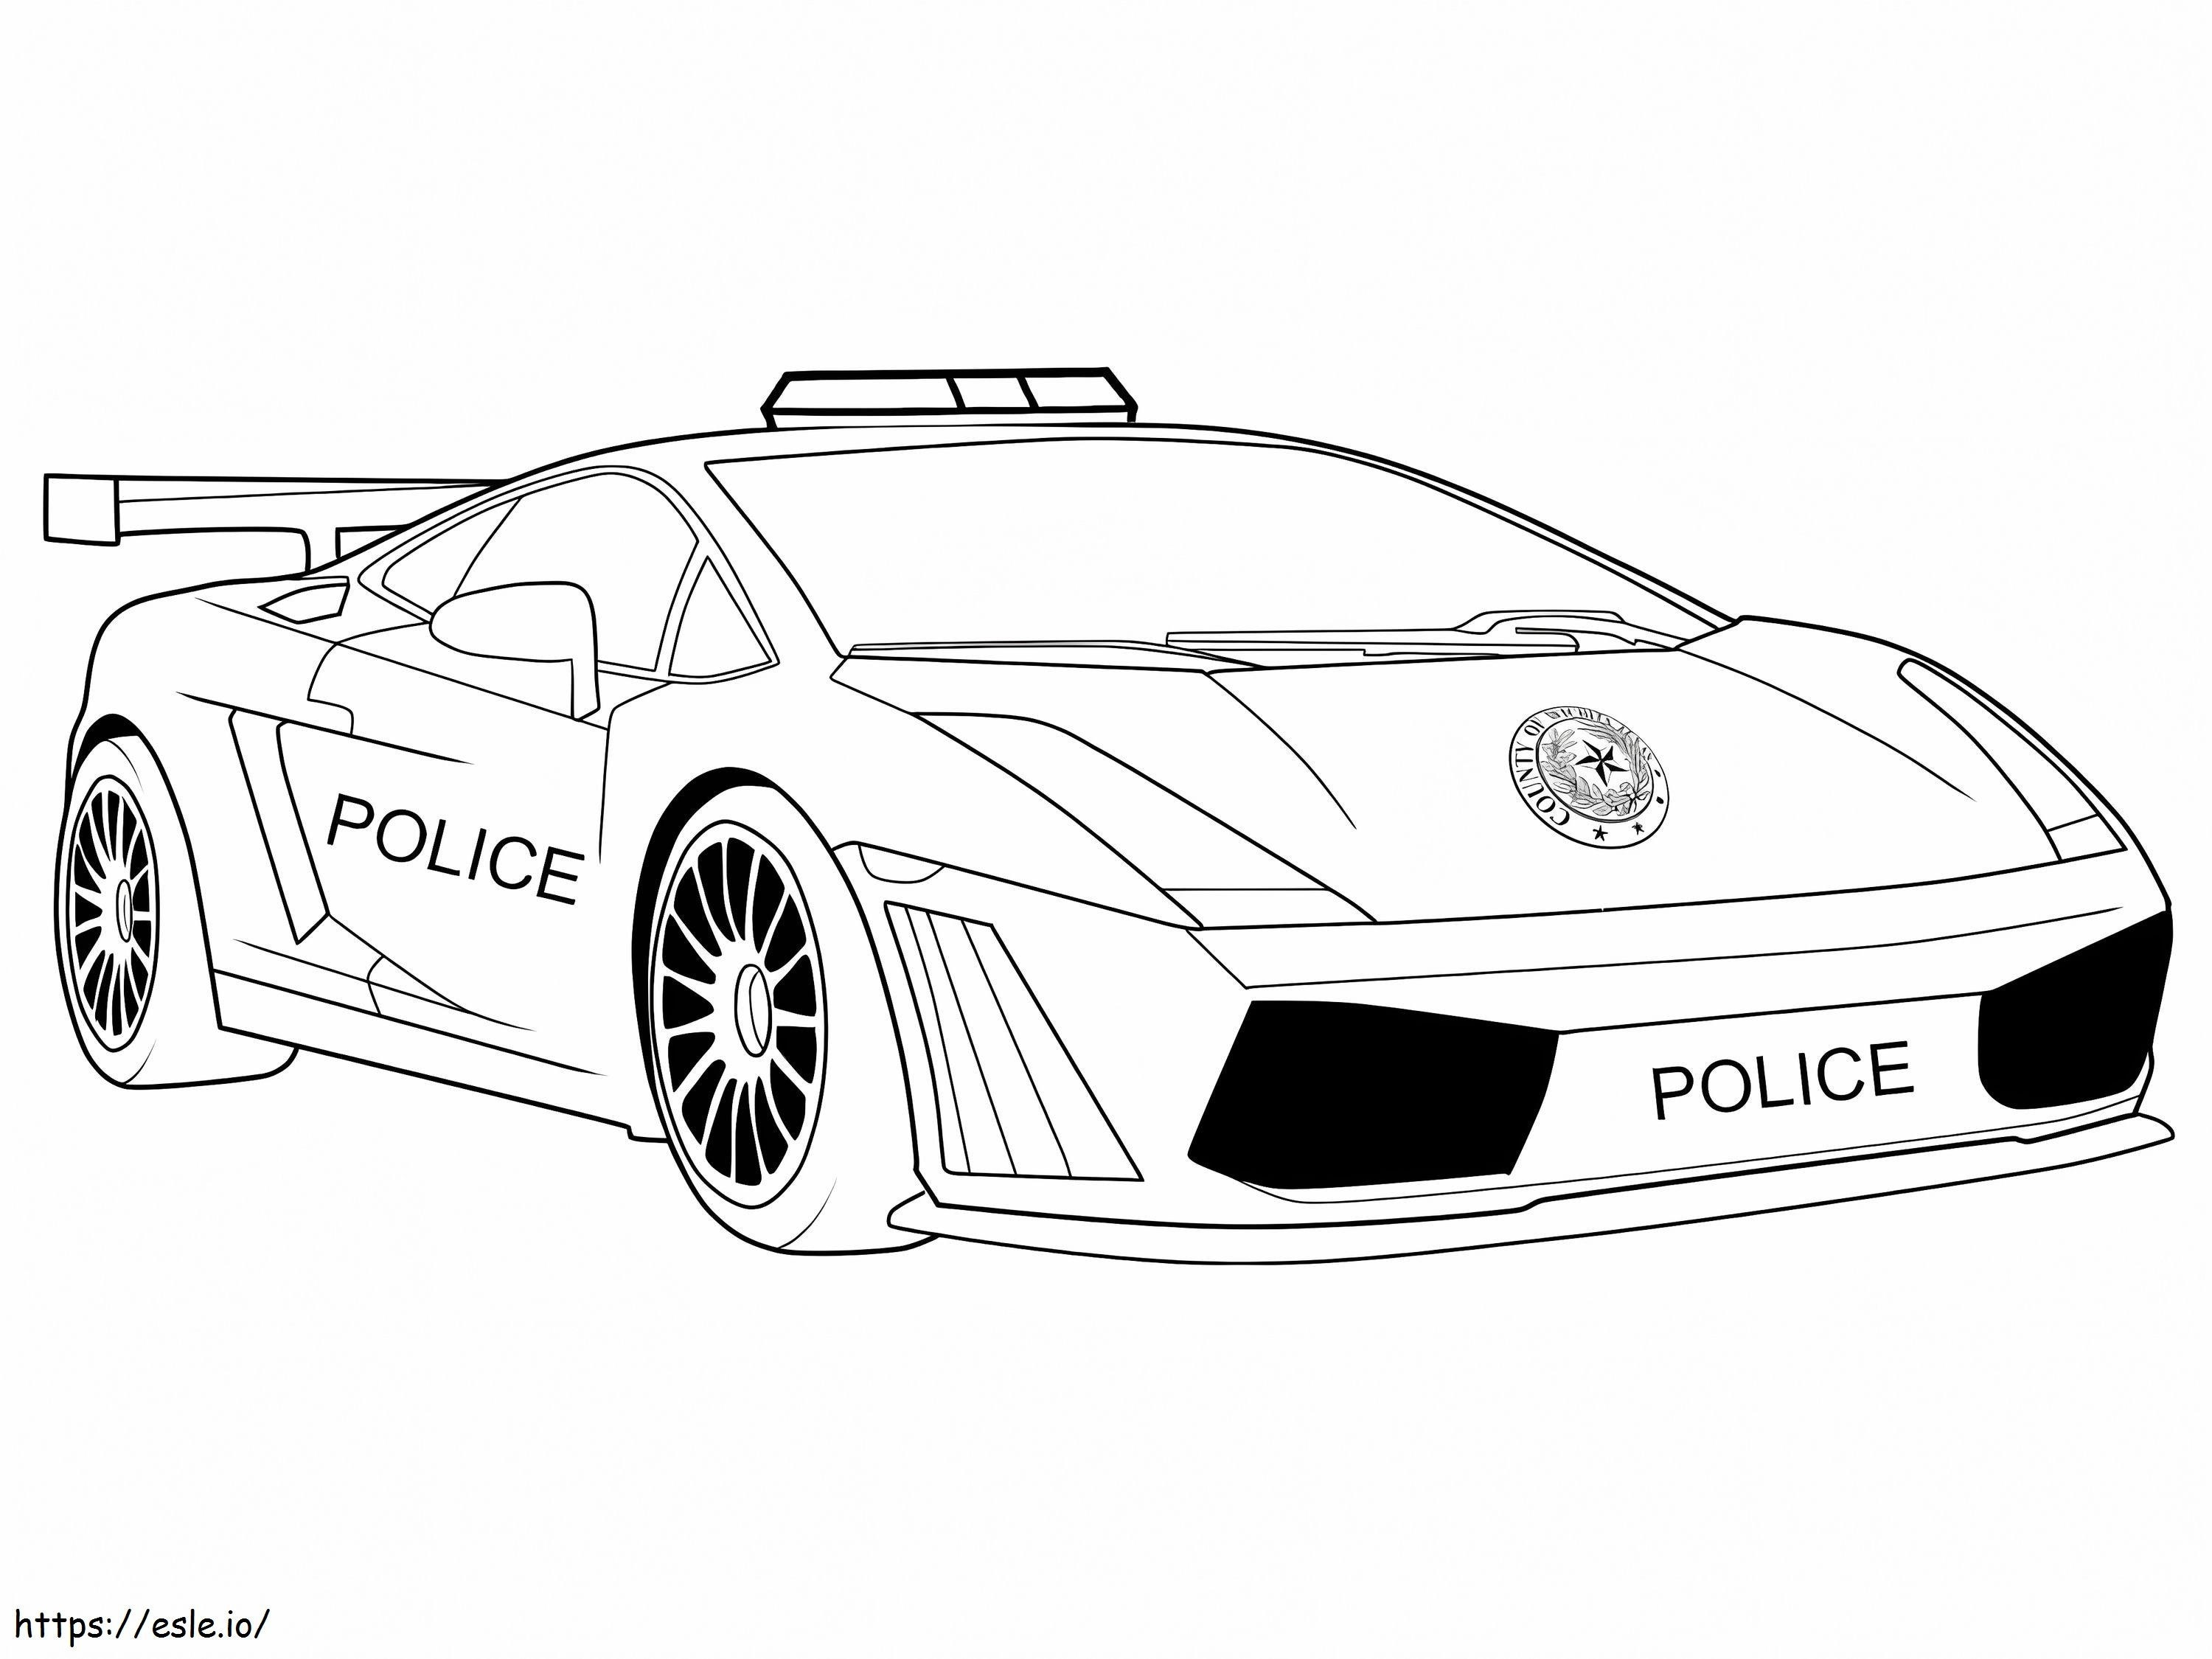 Lamborghini Police Car coloring page